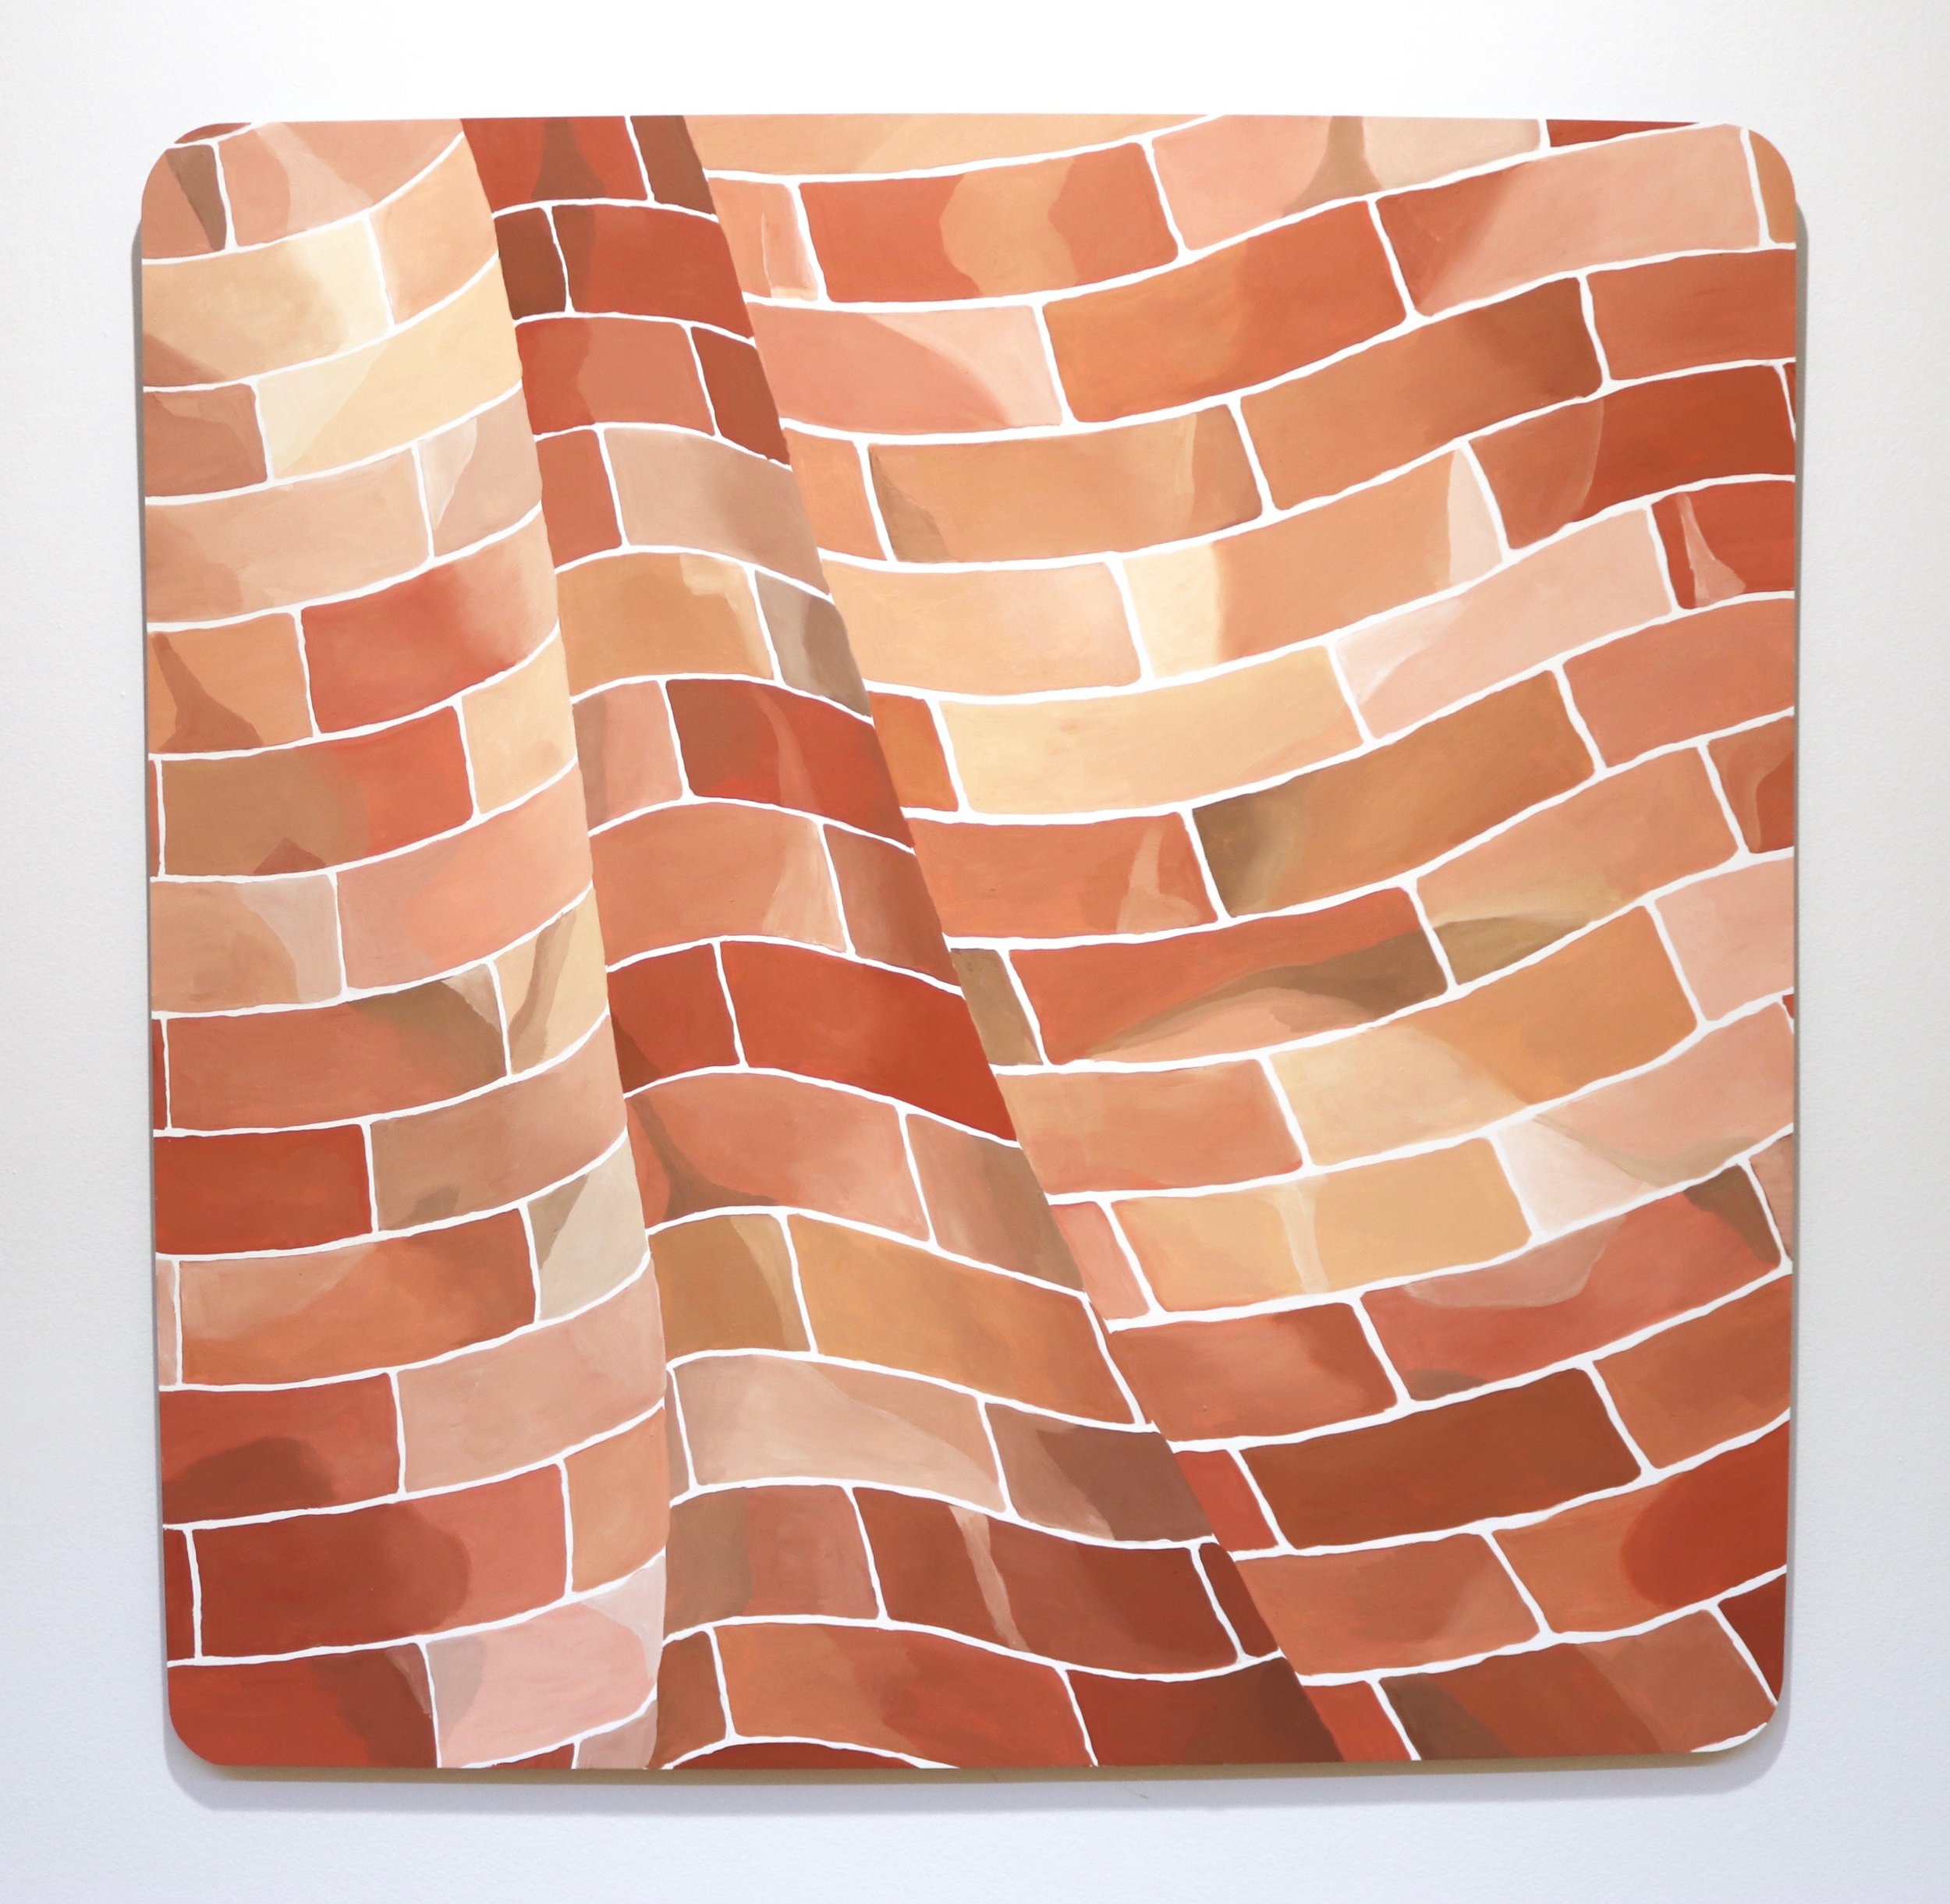  ‘Soft Brick’, acrylic on aluminium, 2021 